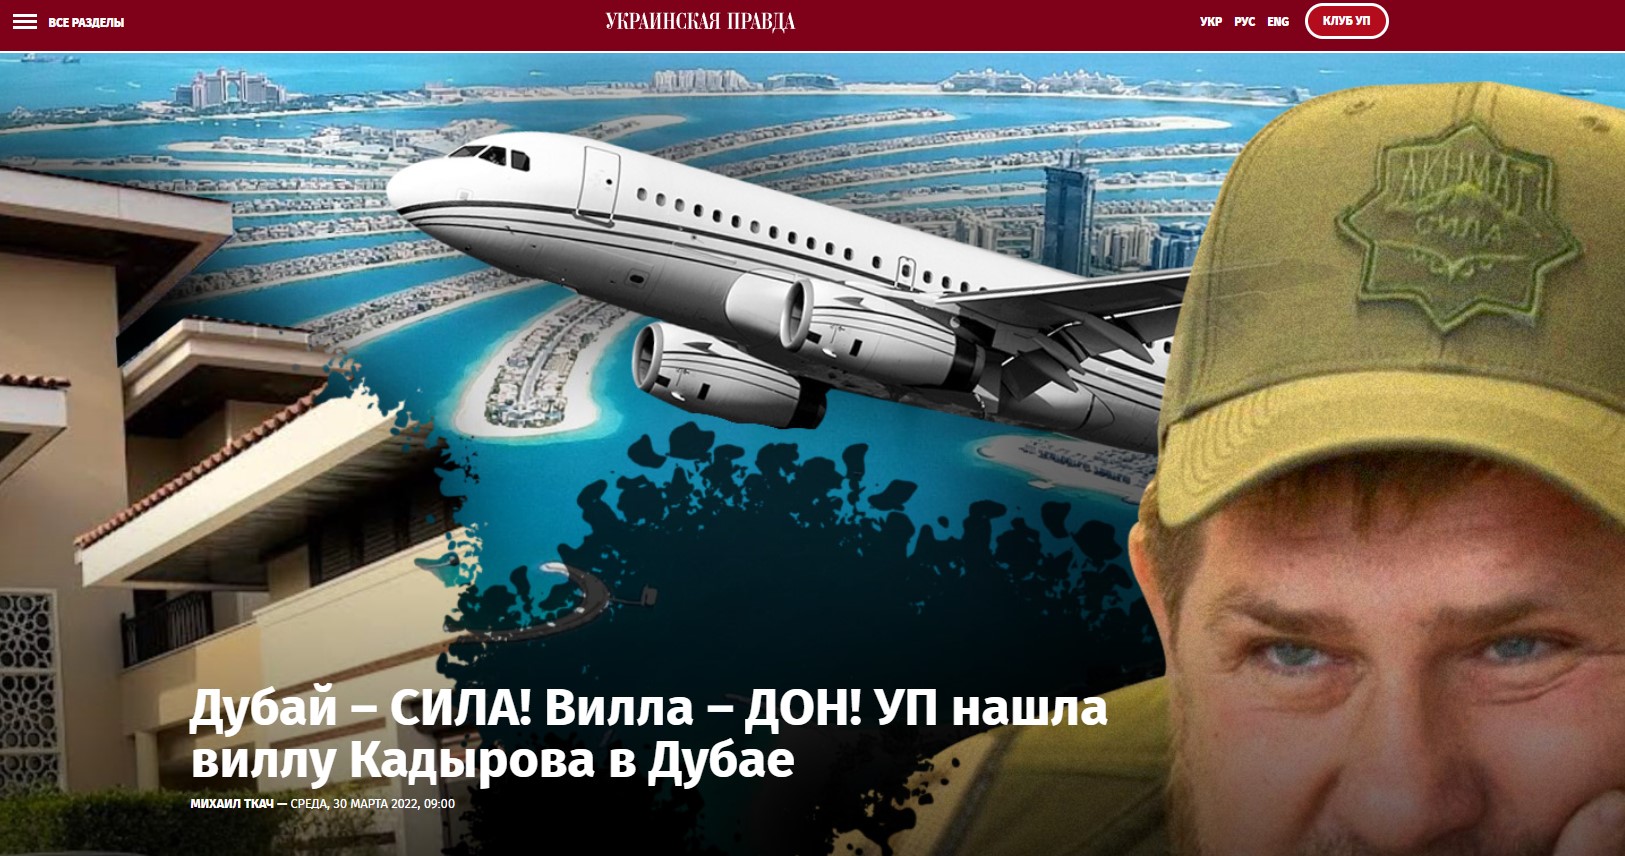 Скриншот сайта "Украинской правды"